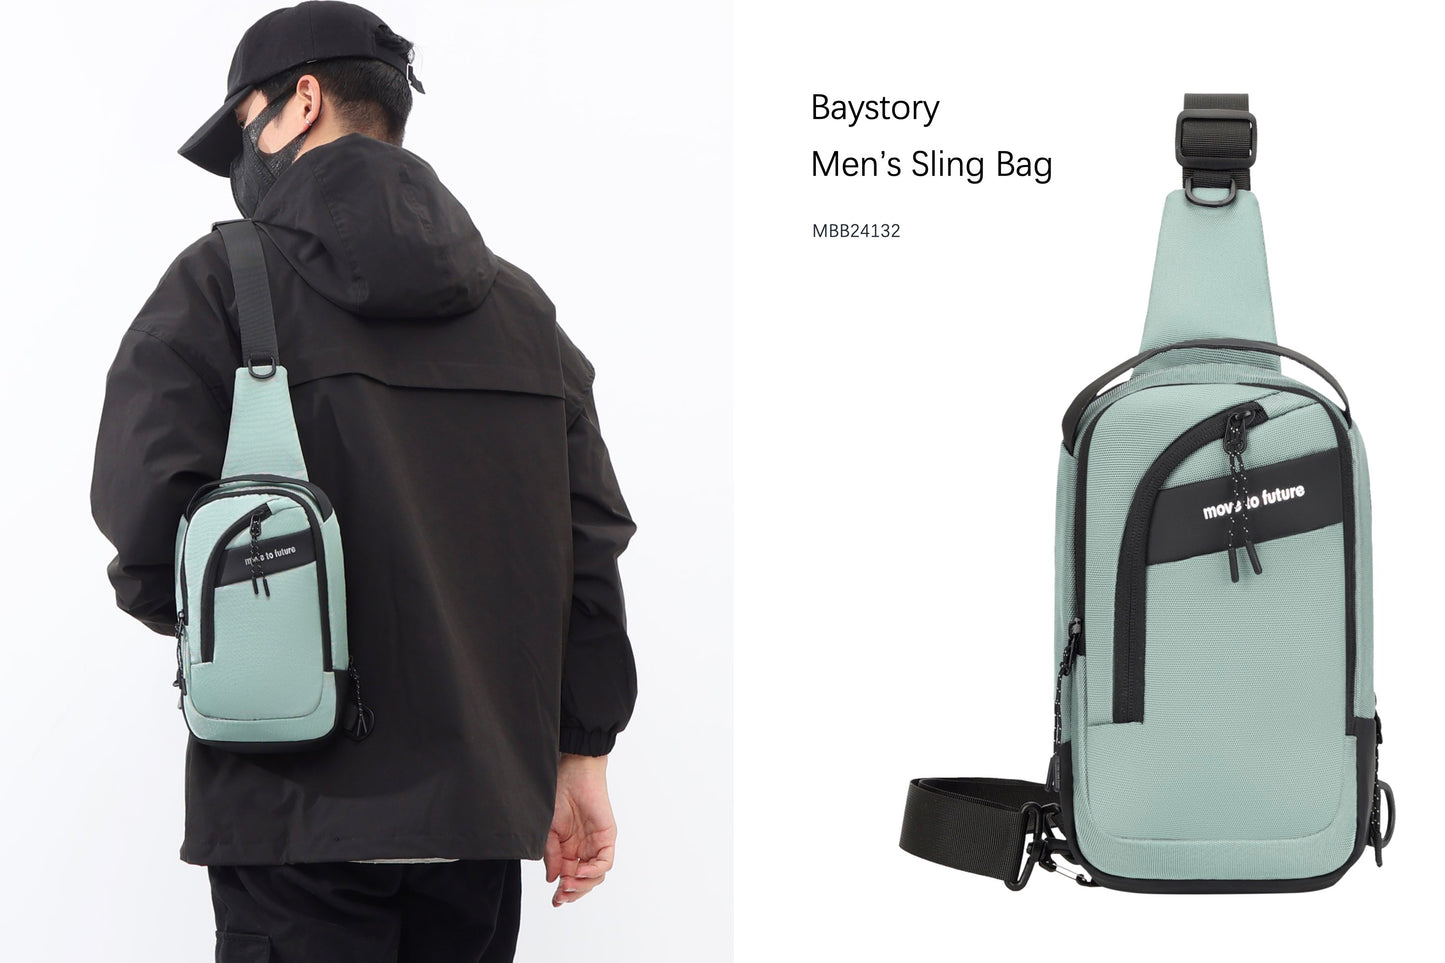 Baystory Men’s Sling Bag MBB24132 - Baystory